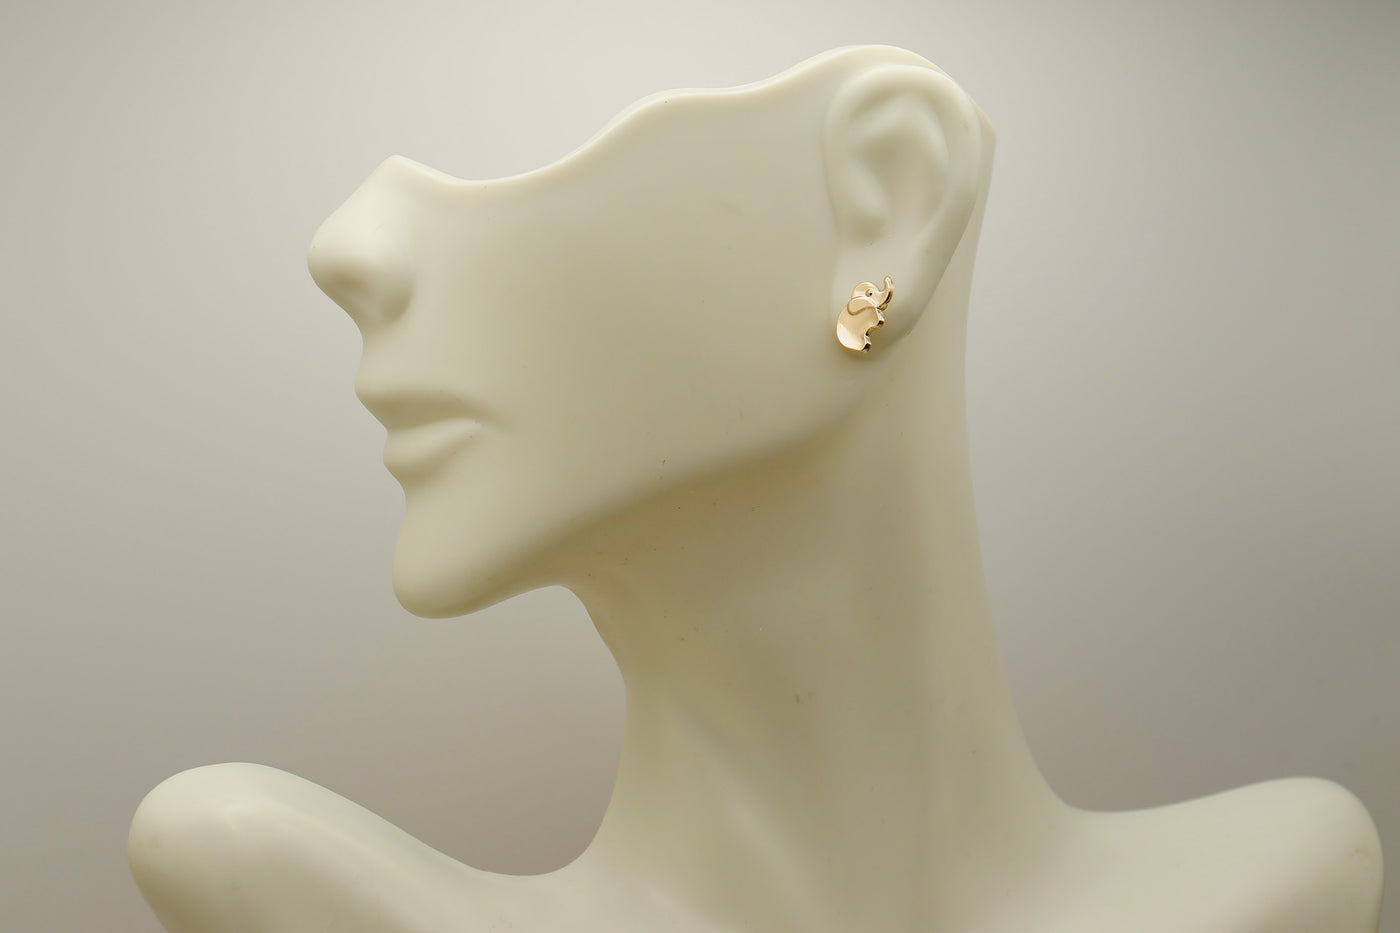 14K Gold Cute Elephant Small Stud Earrings